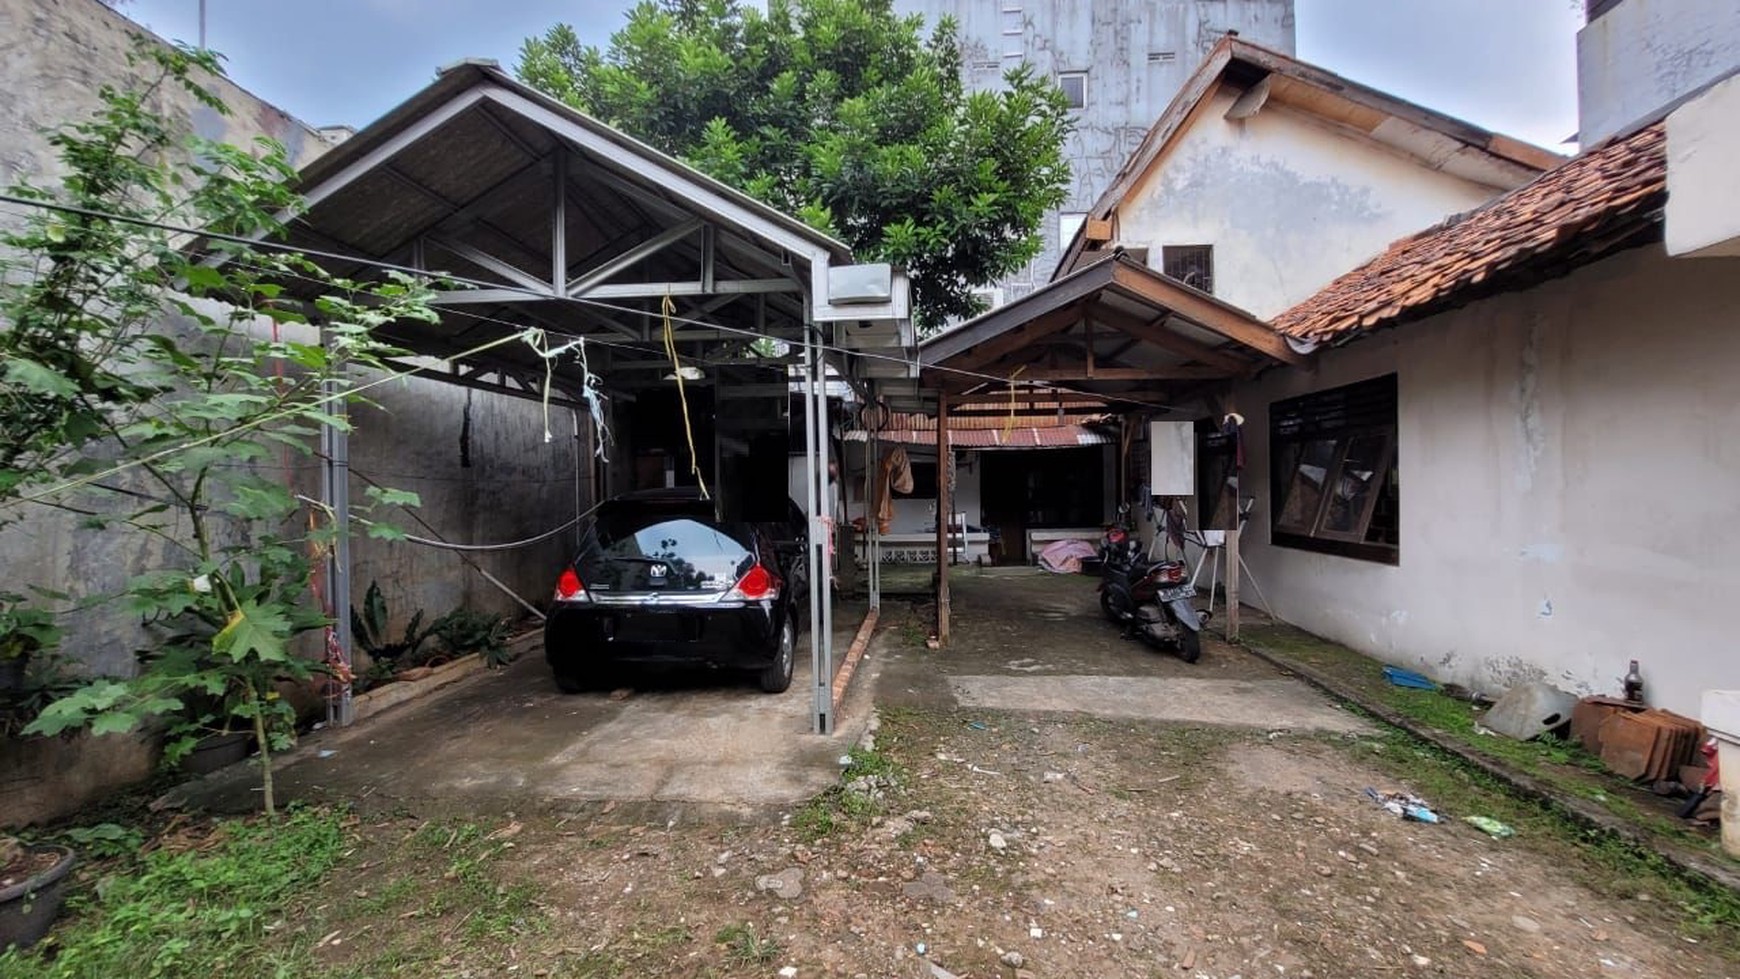 Dijual rumah hanya hitung tanahnya saja. Lokasi strategis di sekitar Pondok Indah, Jakarta Selatan